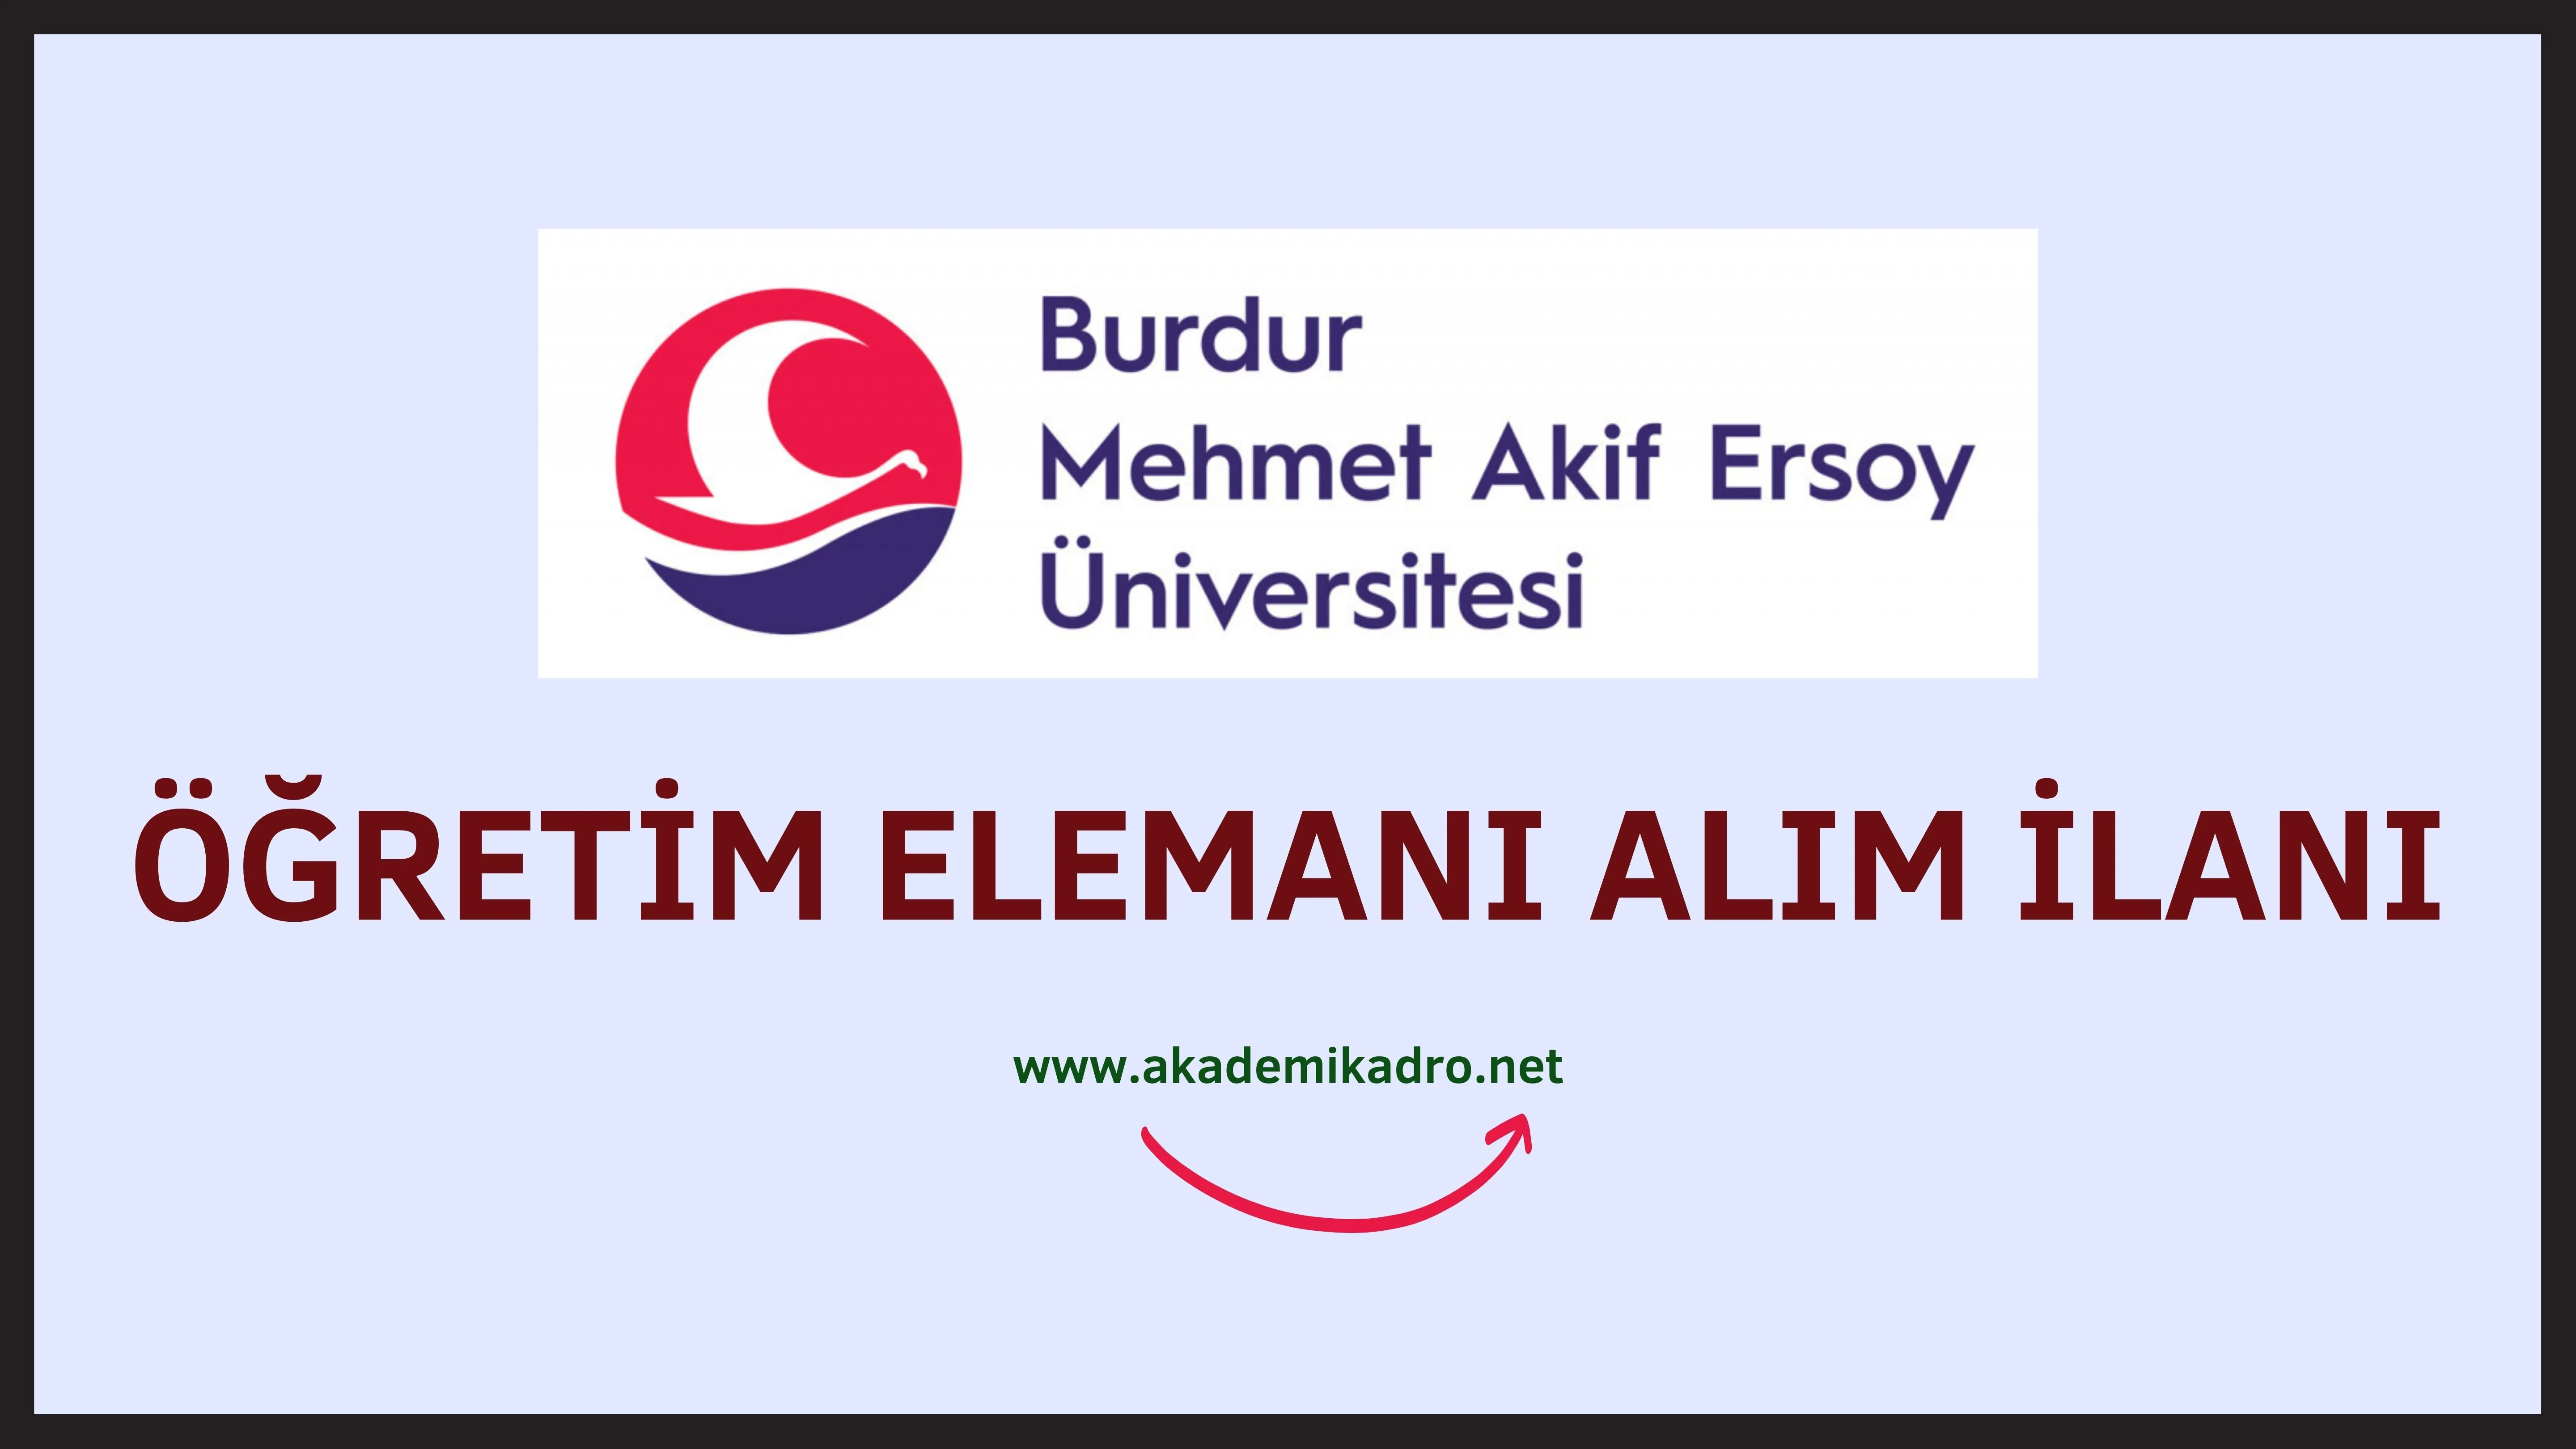 Burdur Mehmet Akif Ersoy Üniversitesi 2 Araştırma görevlisi ve 2 öğretim üyesi alacaktır.